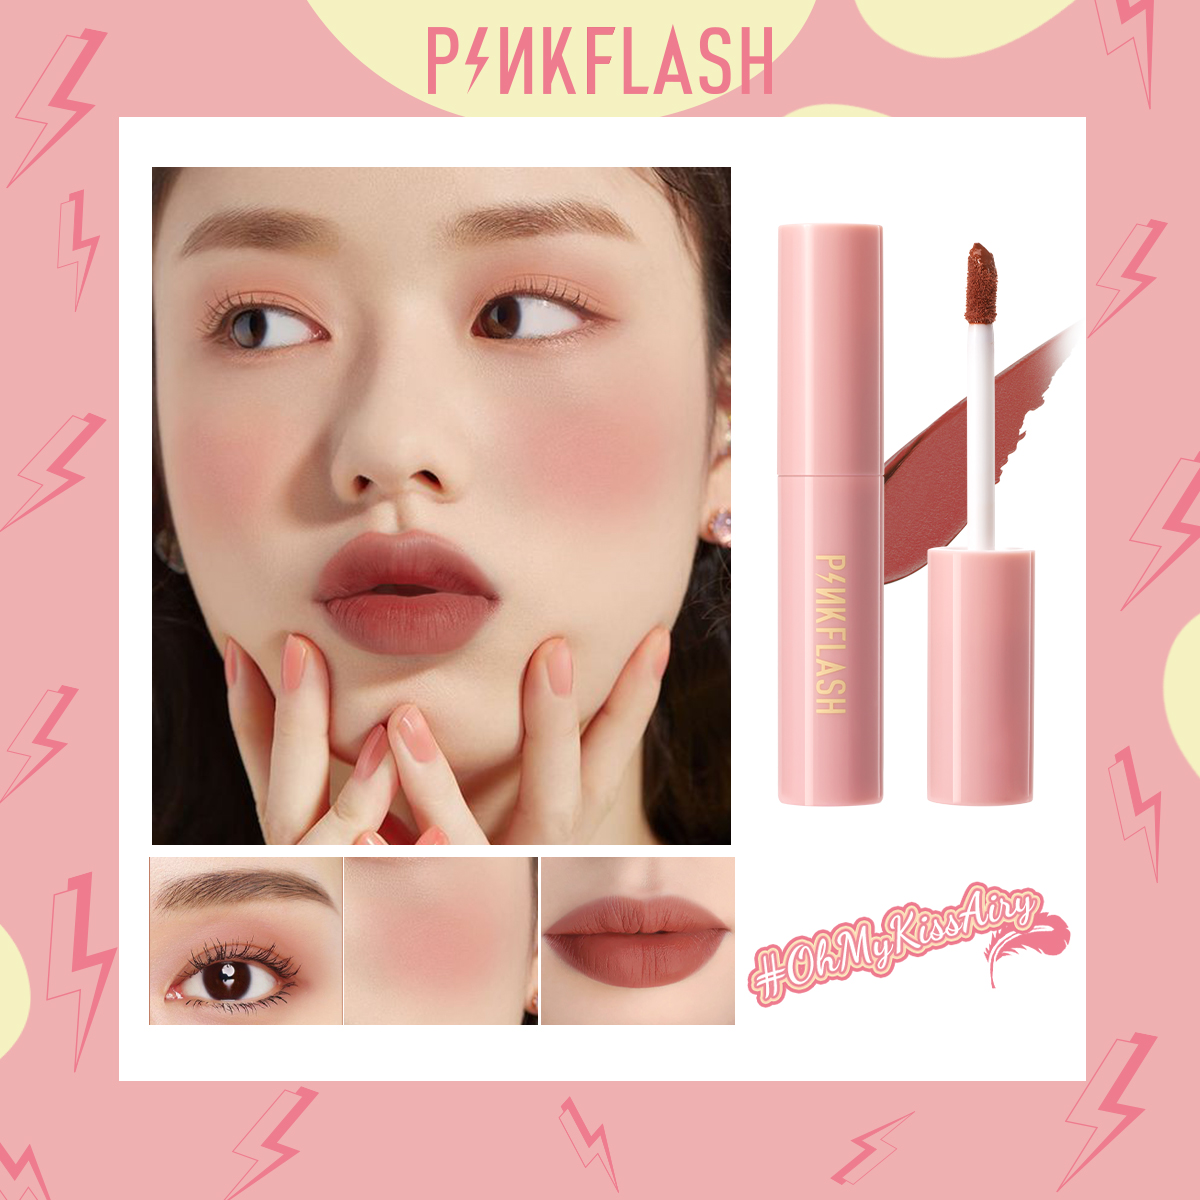 PinkFlash kiss air matte lipsticks